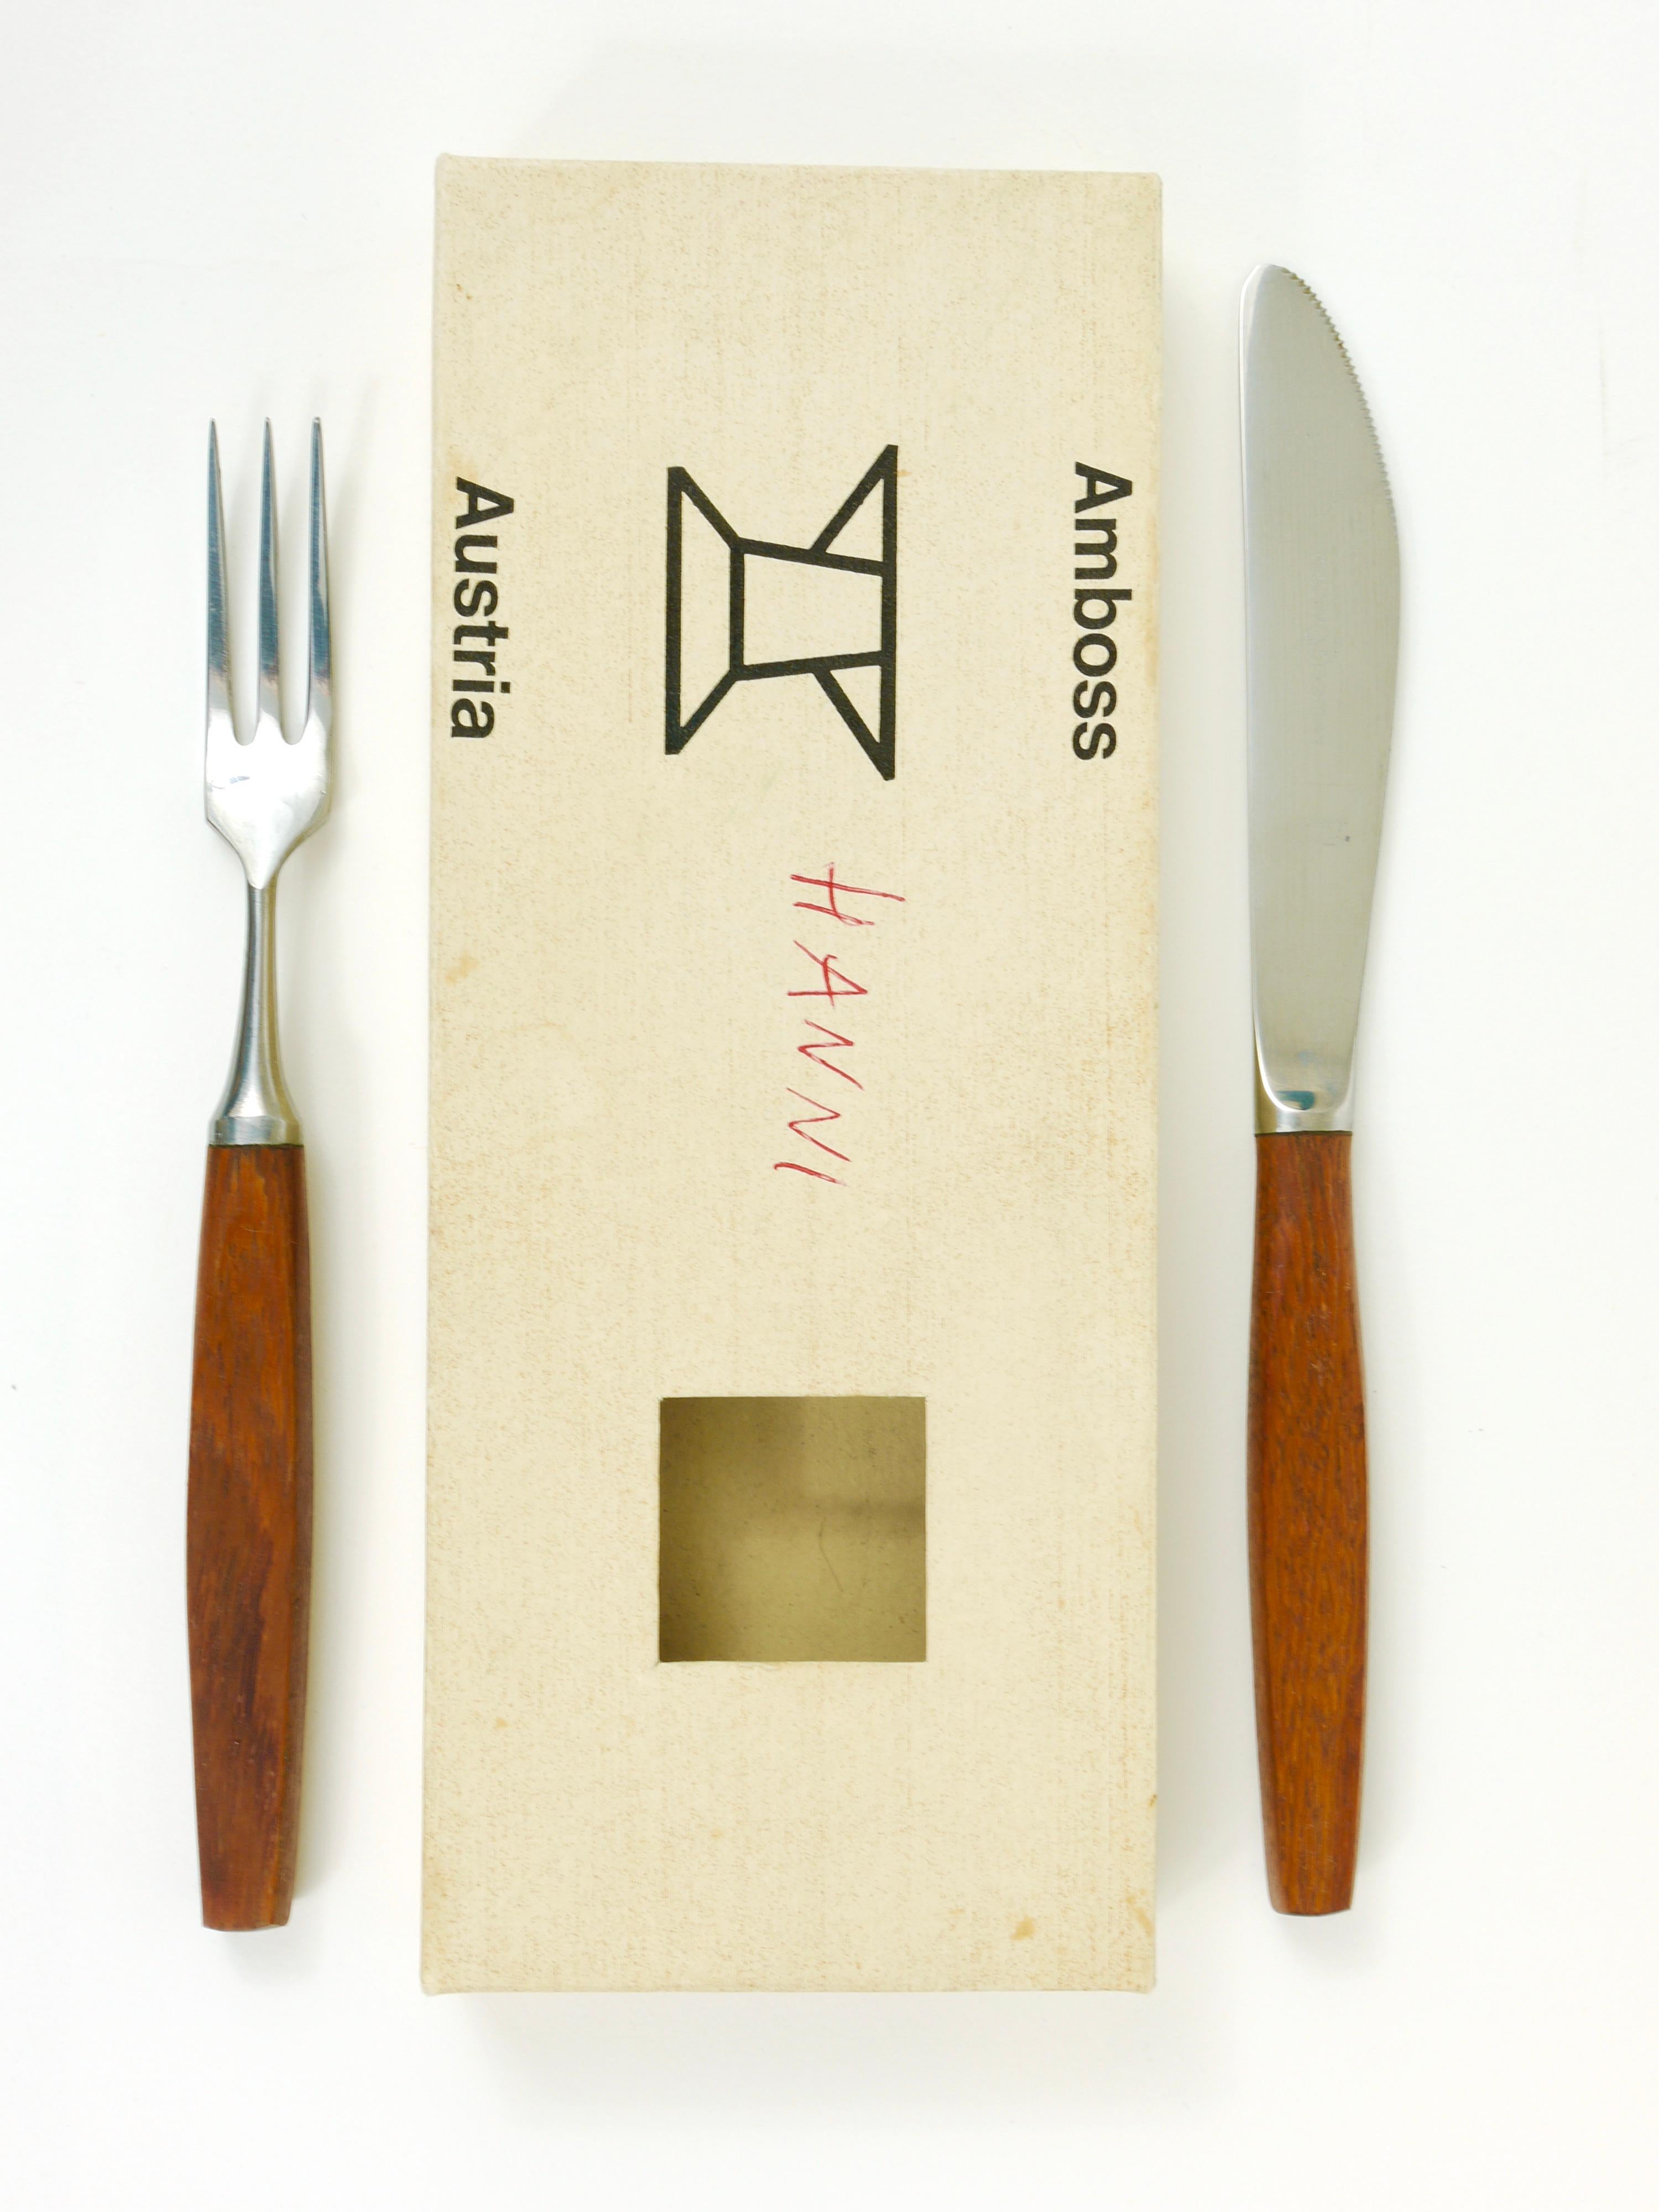 Ein Satz von sechs kleinen modernistischen Gabeln und Messern in ihren Originalkartons. Ausgeführt in den 1950er Jahren von Amboss Austria. Hergestellt aus rostfreiem Stahl mit schönen Teakholzgriffen. Ursprünglich als Obstmesser und -gabeln